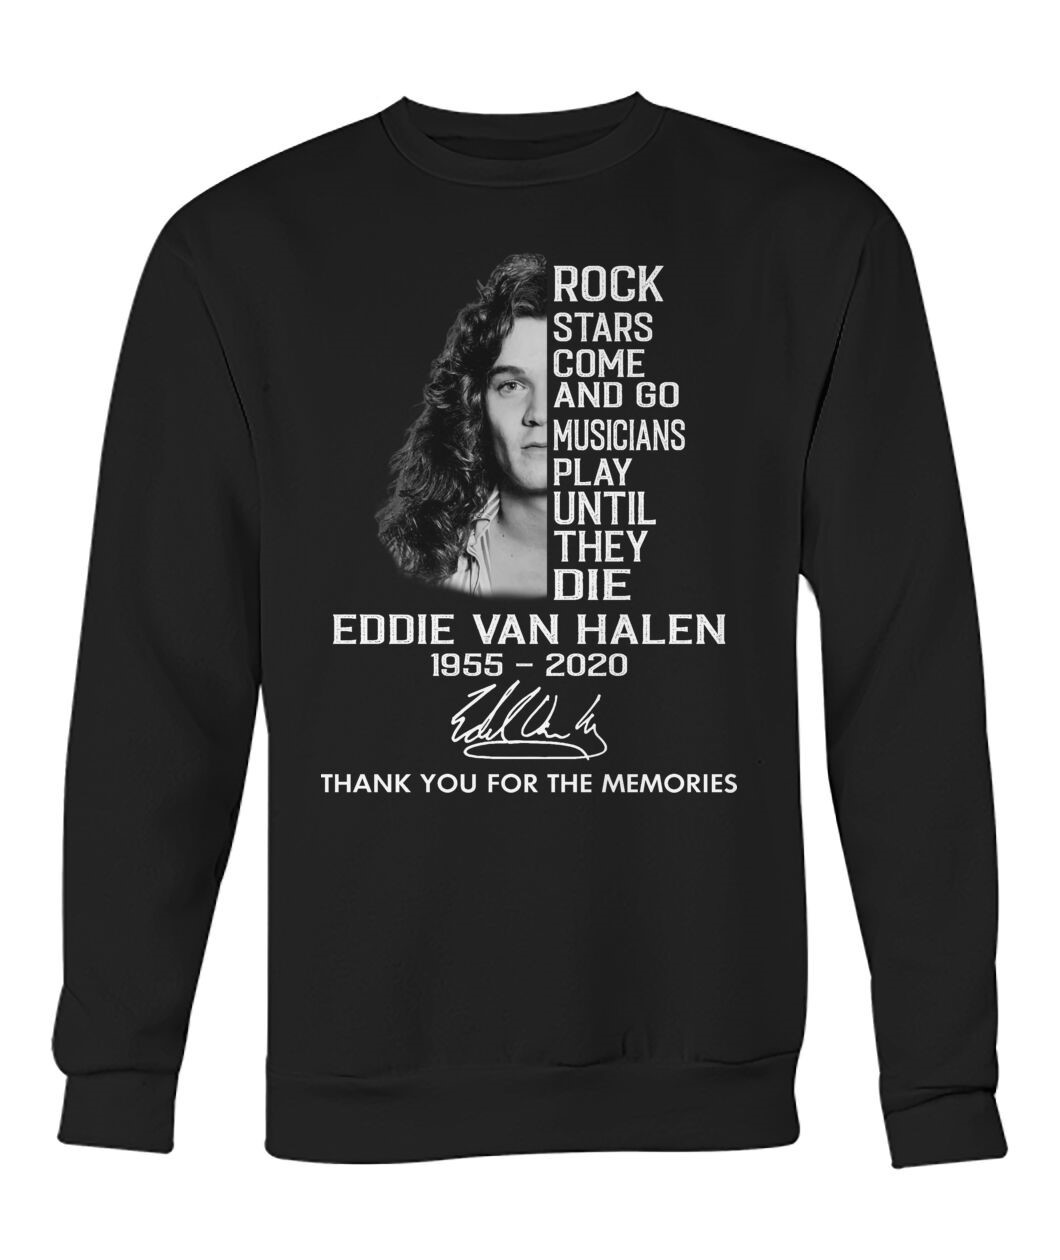 Eddie Van Halen Shirt Rock Start Come And Go Musicians Play Until The Die